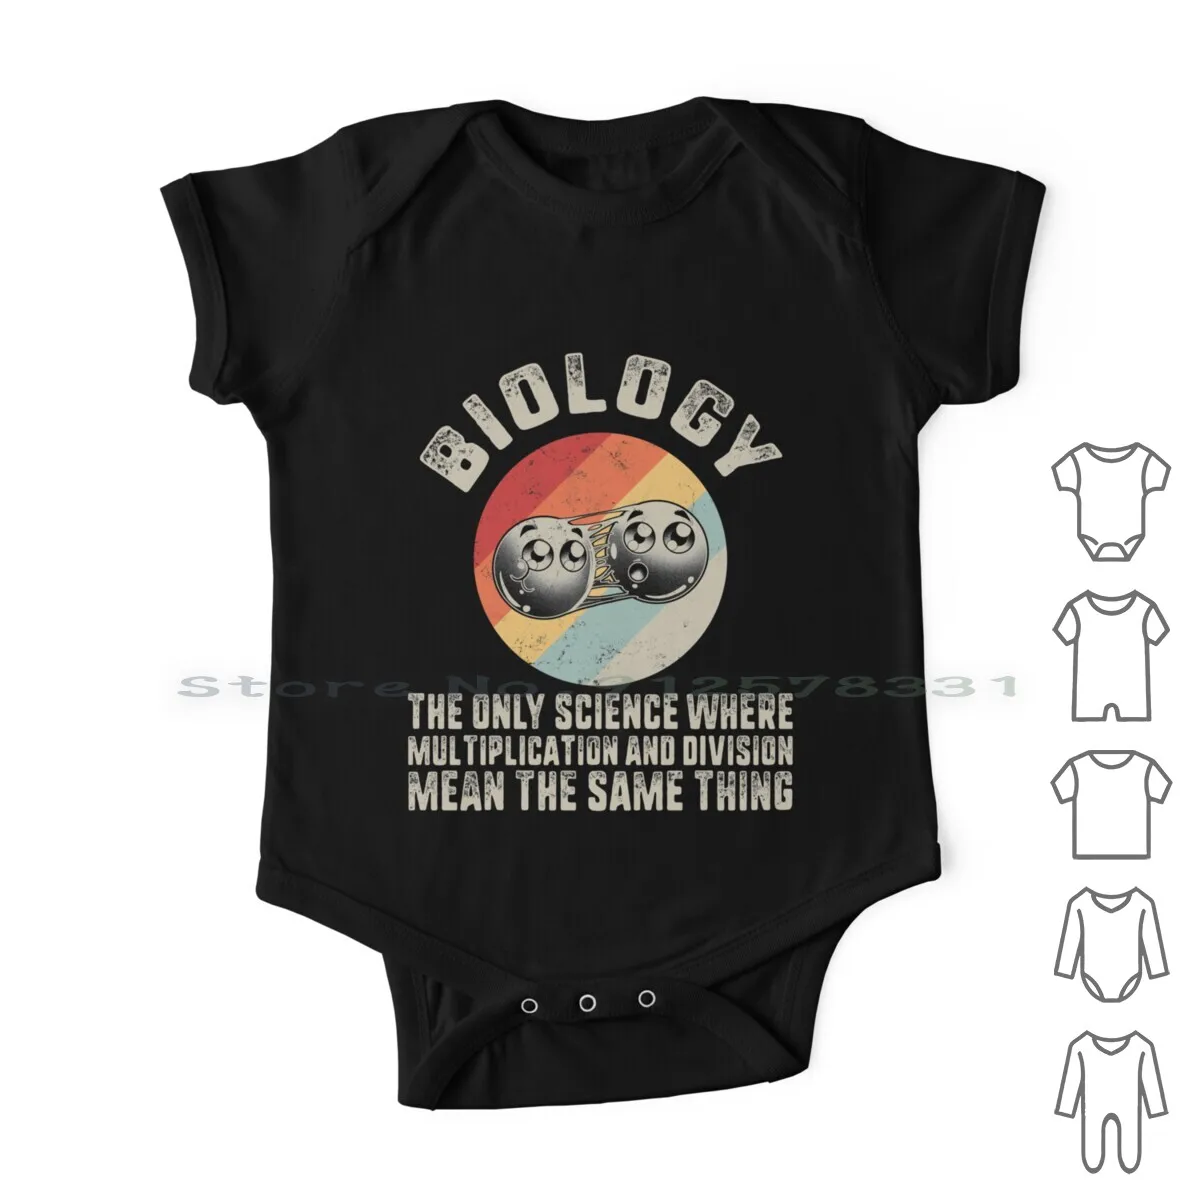 

Рубашка биолога, биология единственная наука, где умножение и деление значат то же самое, забавный подарок на выпускной